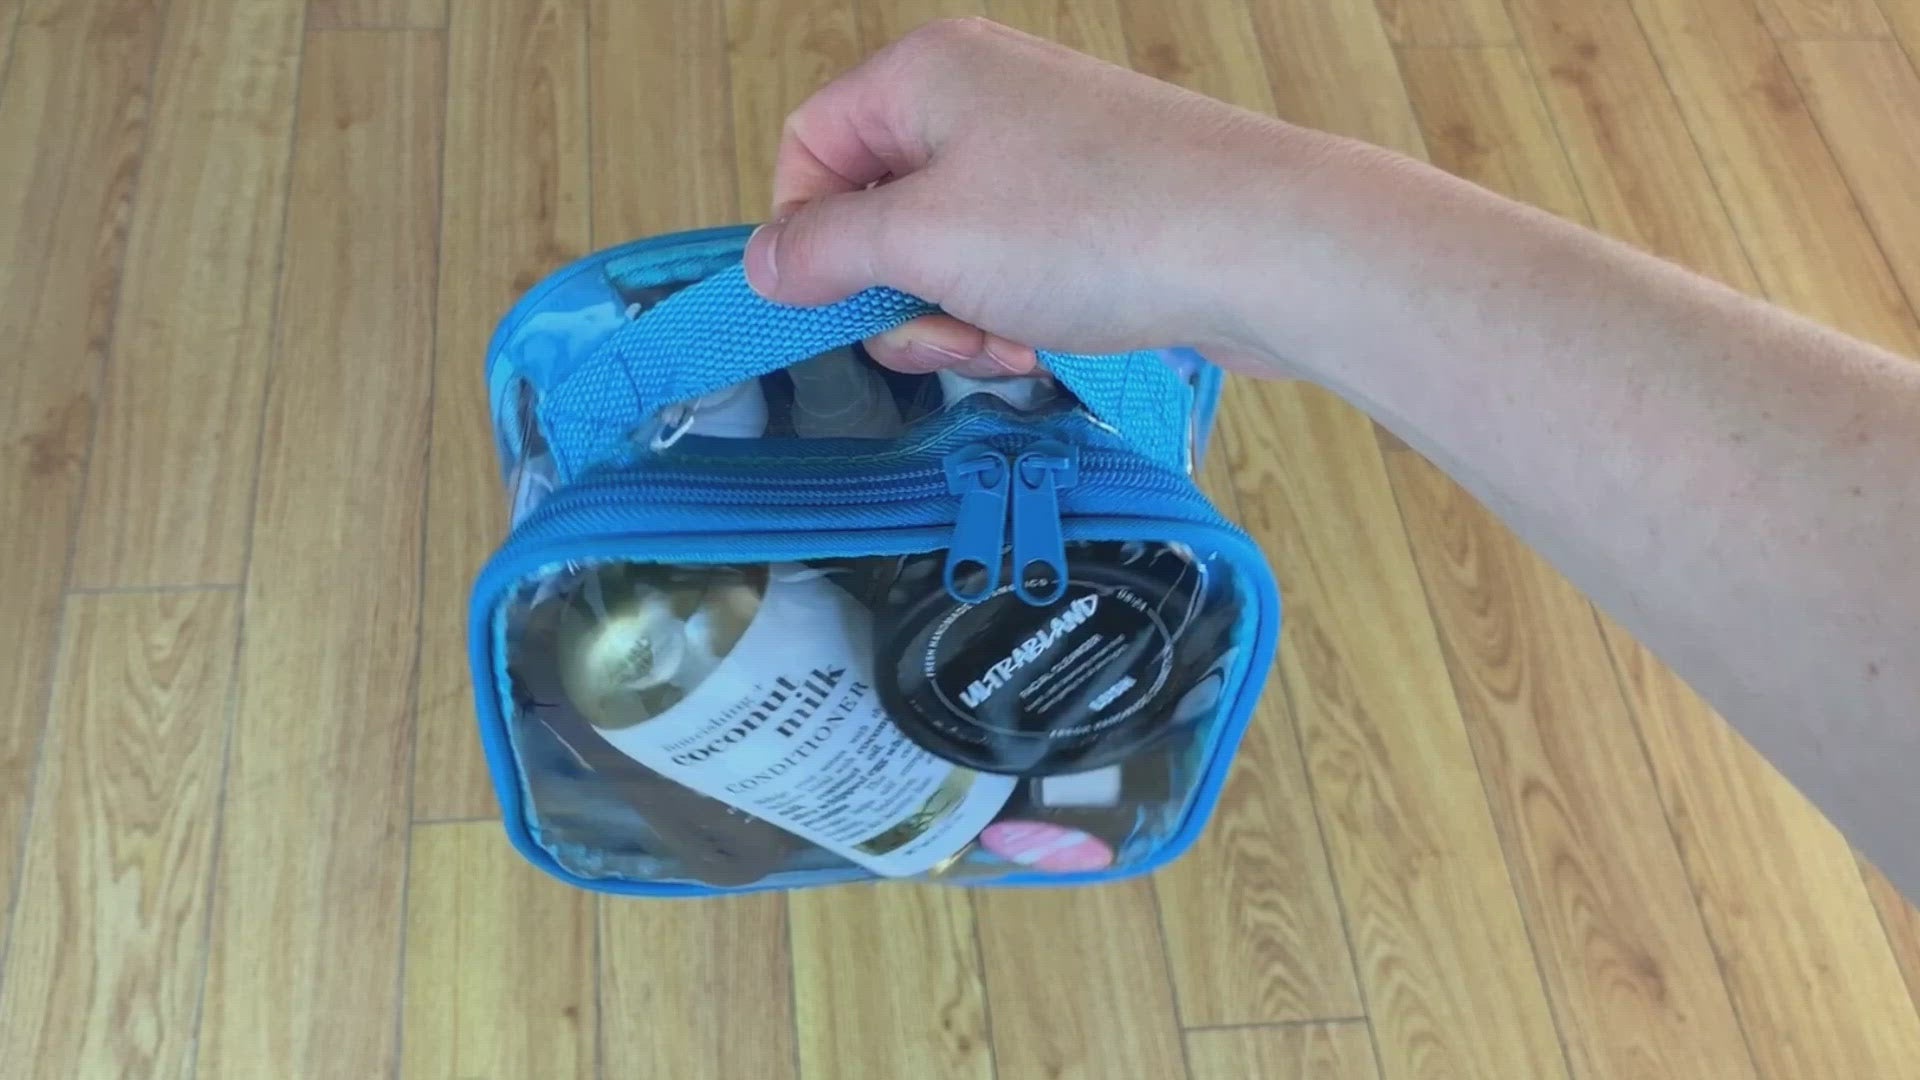 YAMIU Travel TSA Approved Toiletry Bag Waterproof Airline Clear Kit 3- –  YaMiu